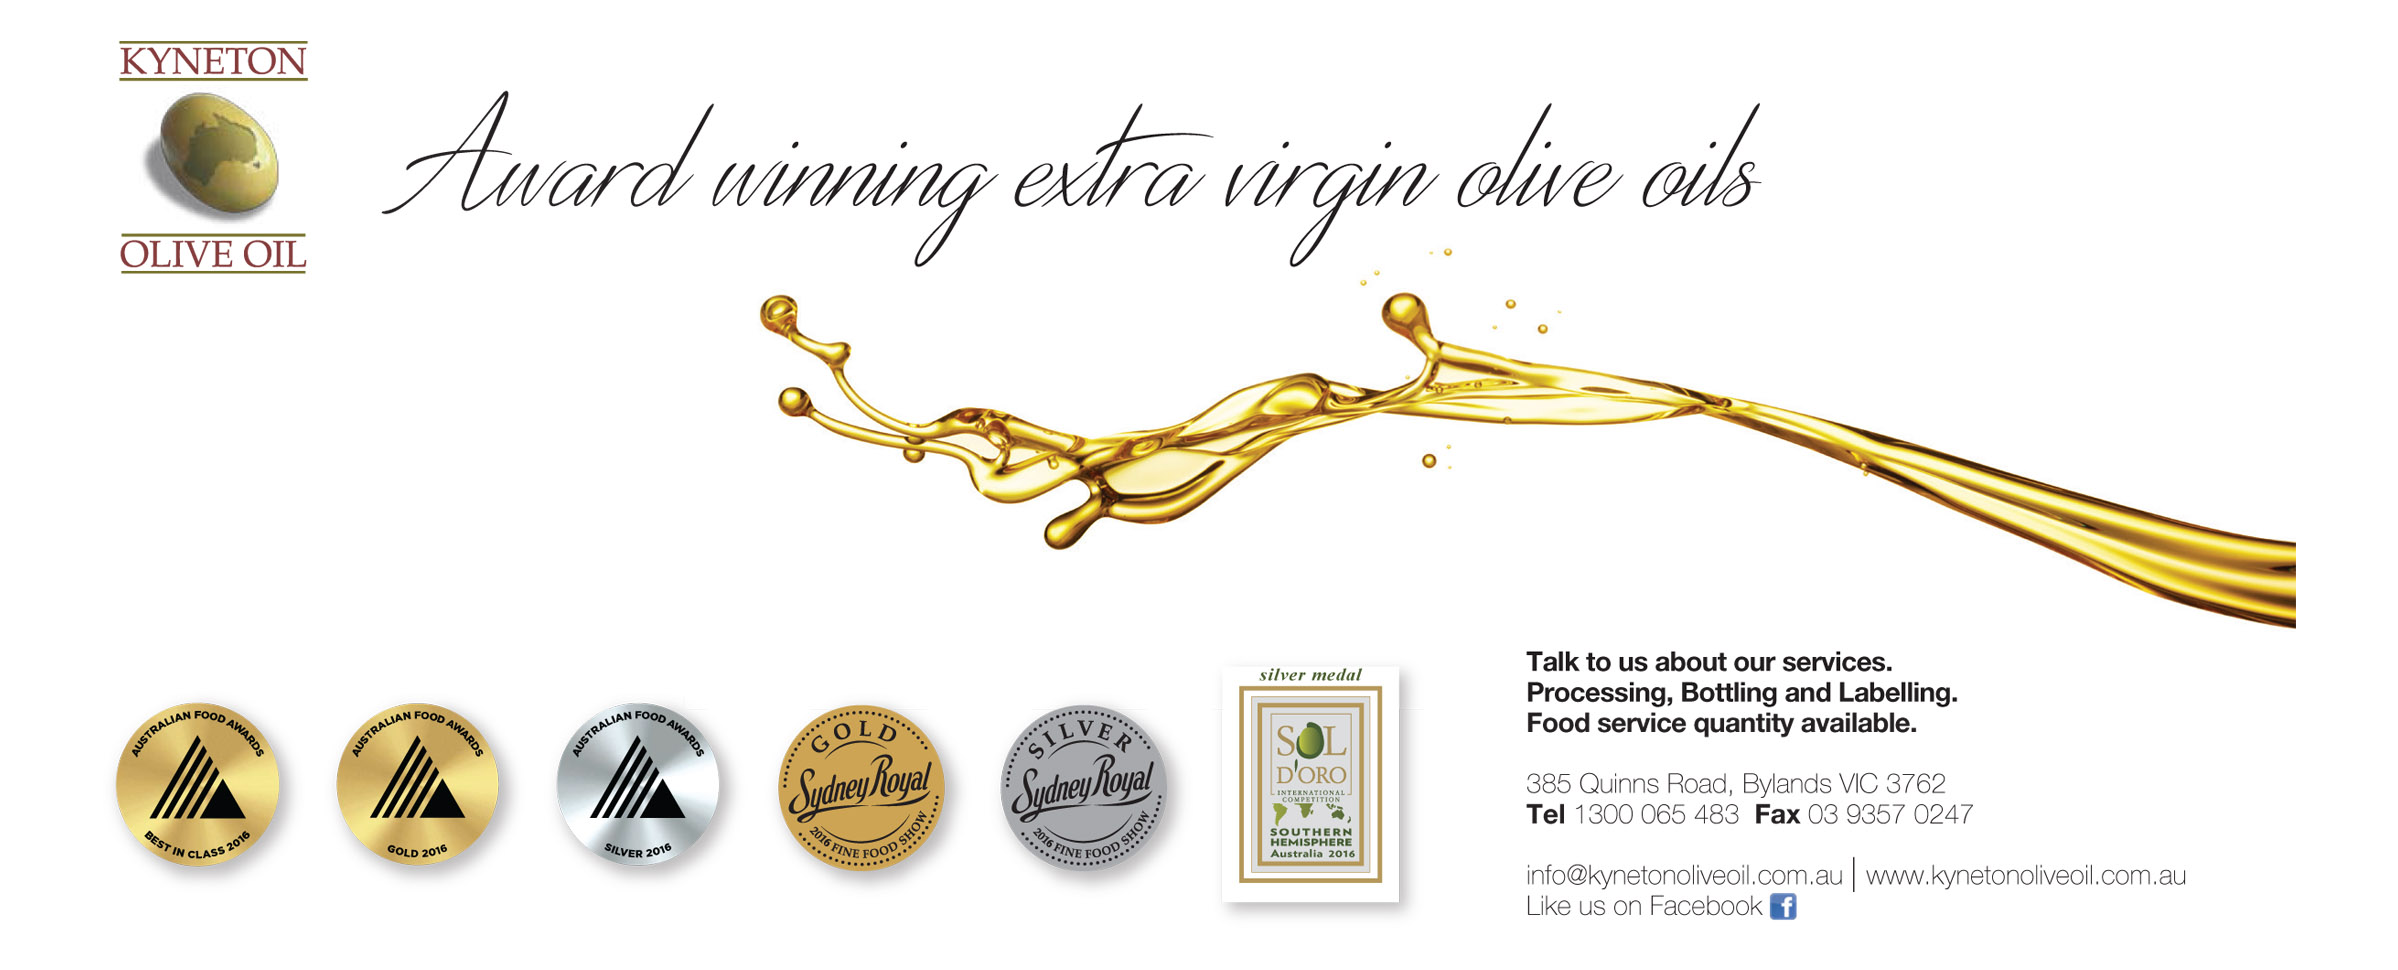 Award Winning Extra Virgin Olive Oils